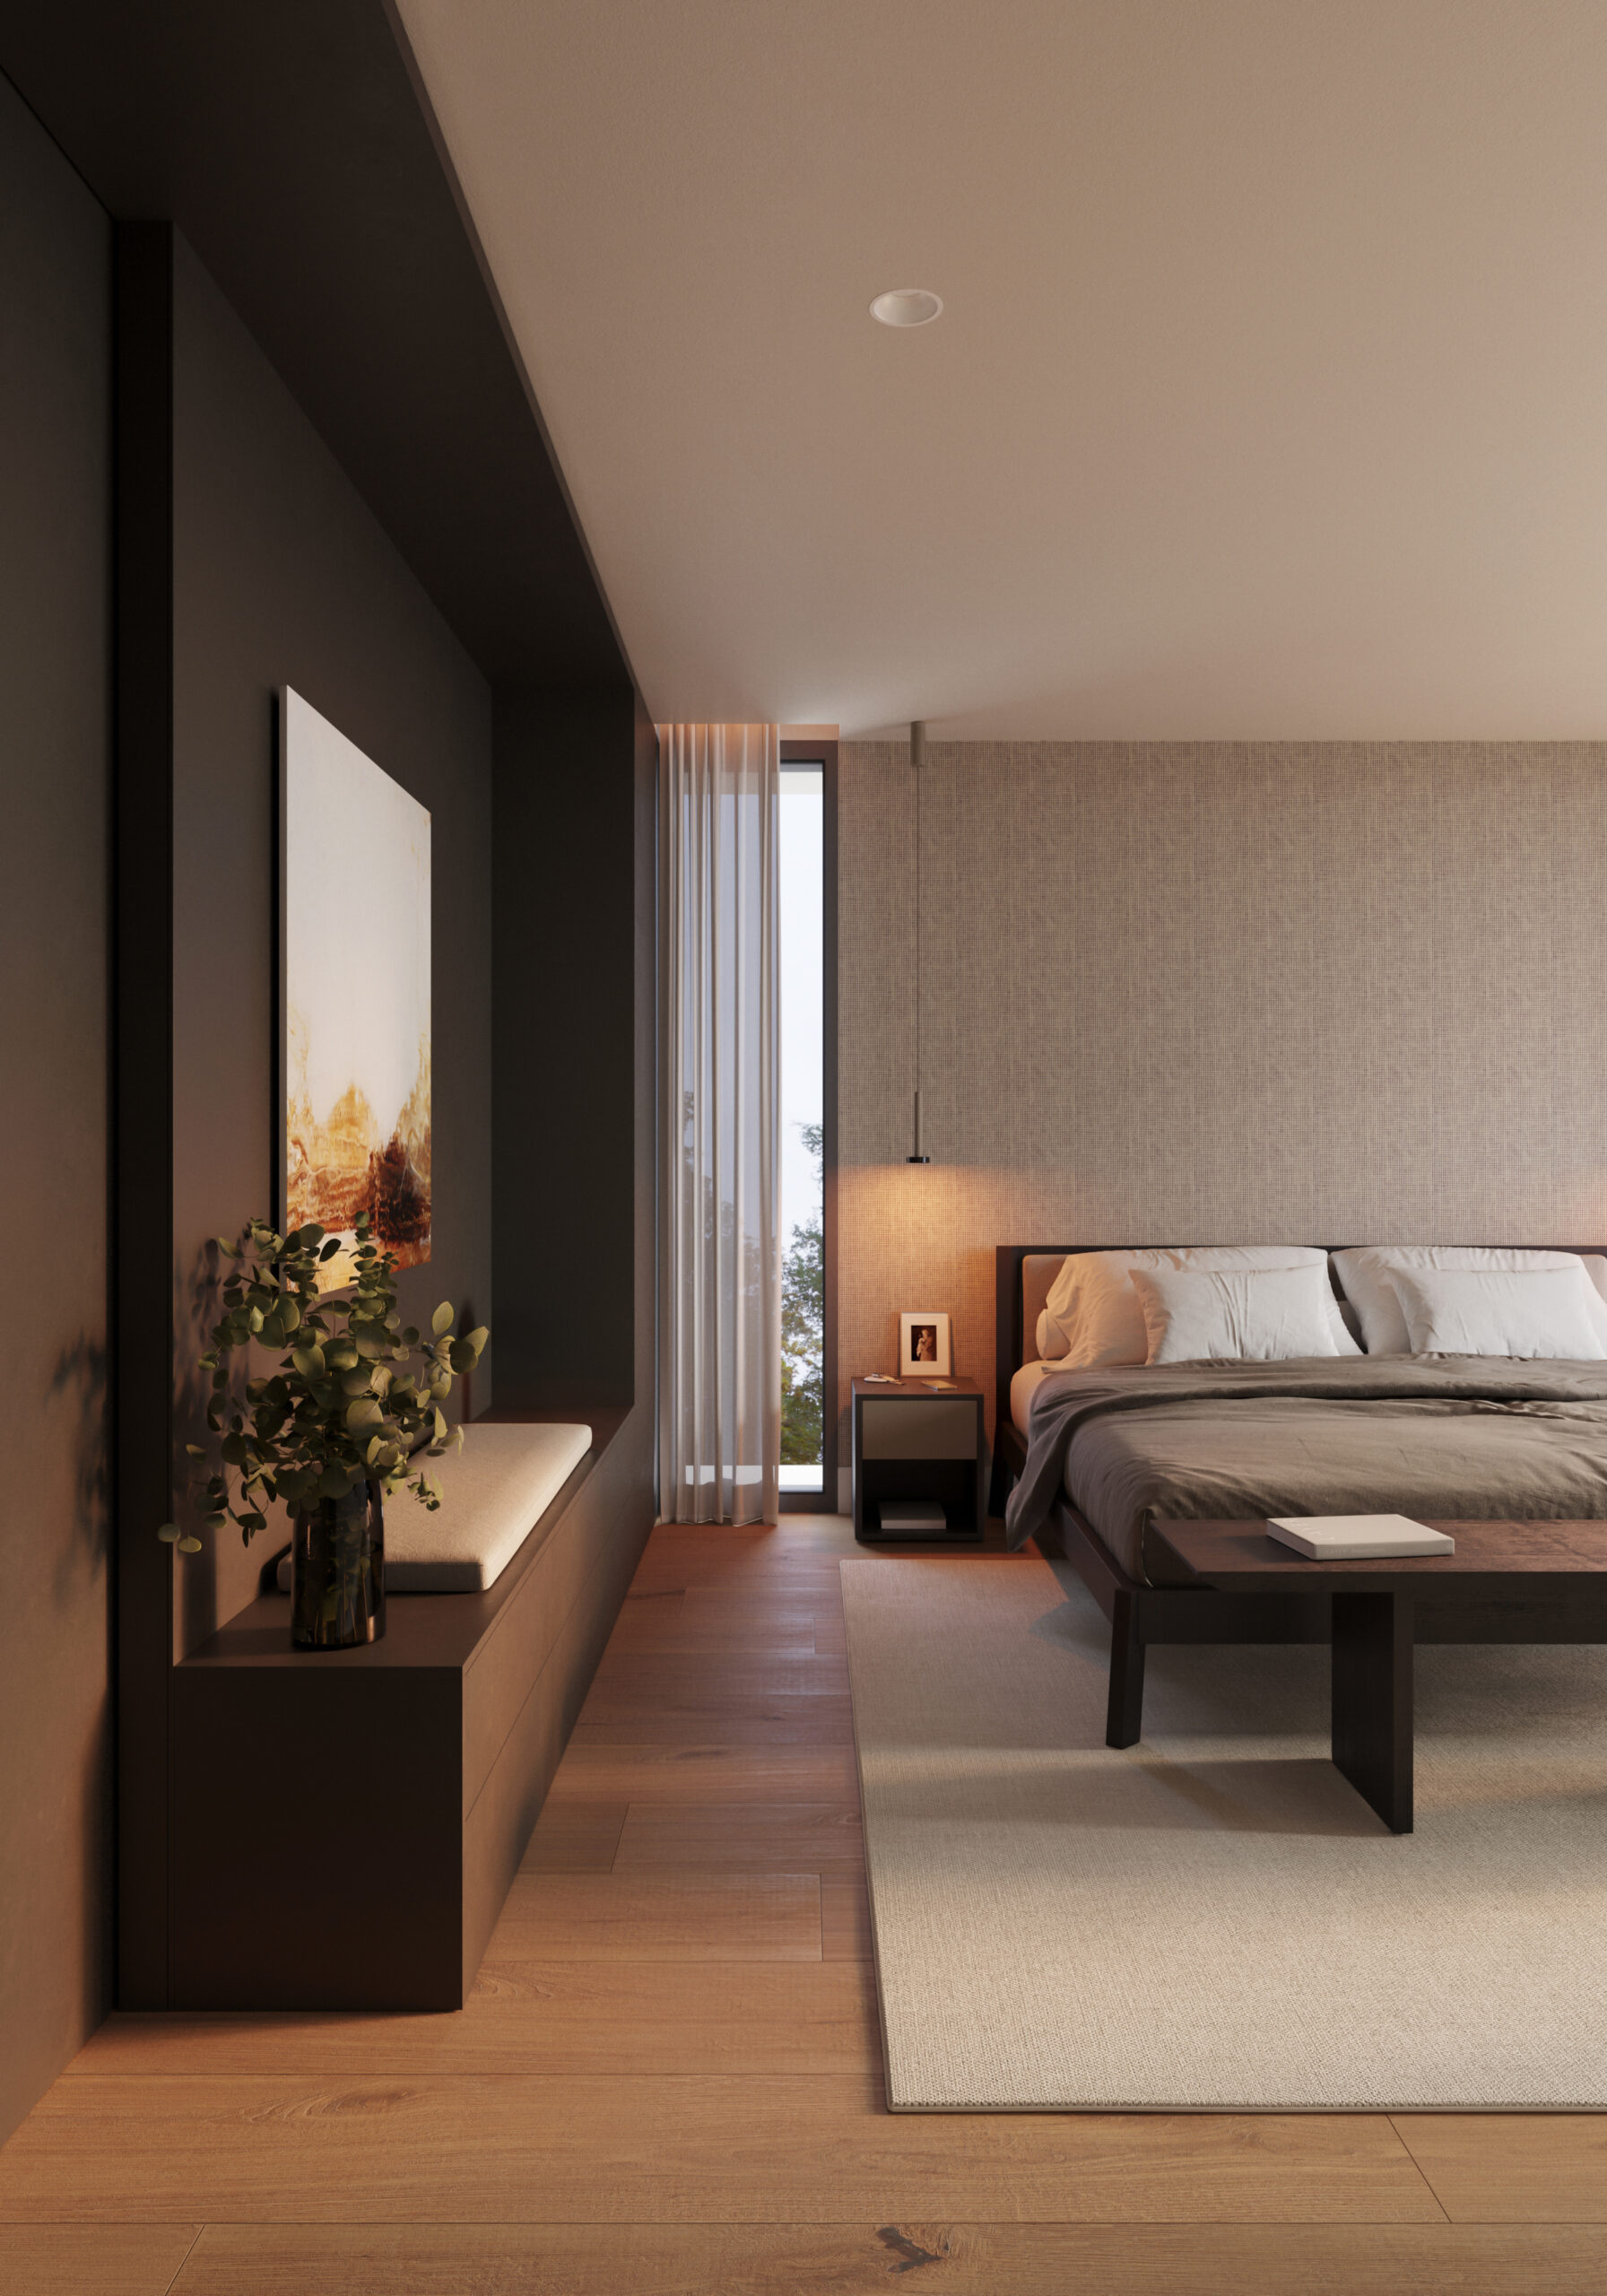 Voll ausgestattete Zimmer mit modernem Design und luxuriösen dunklen Farbtönen